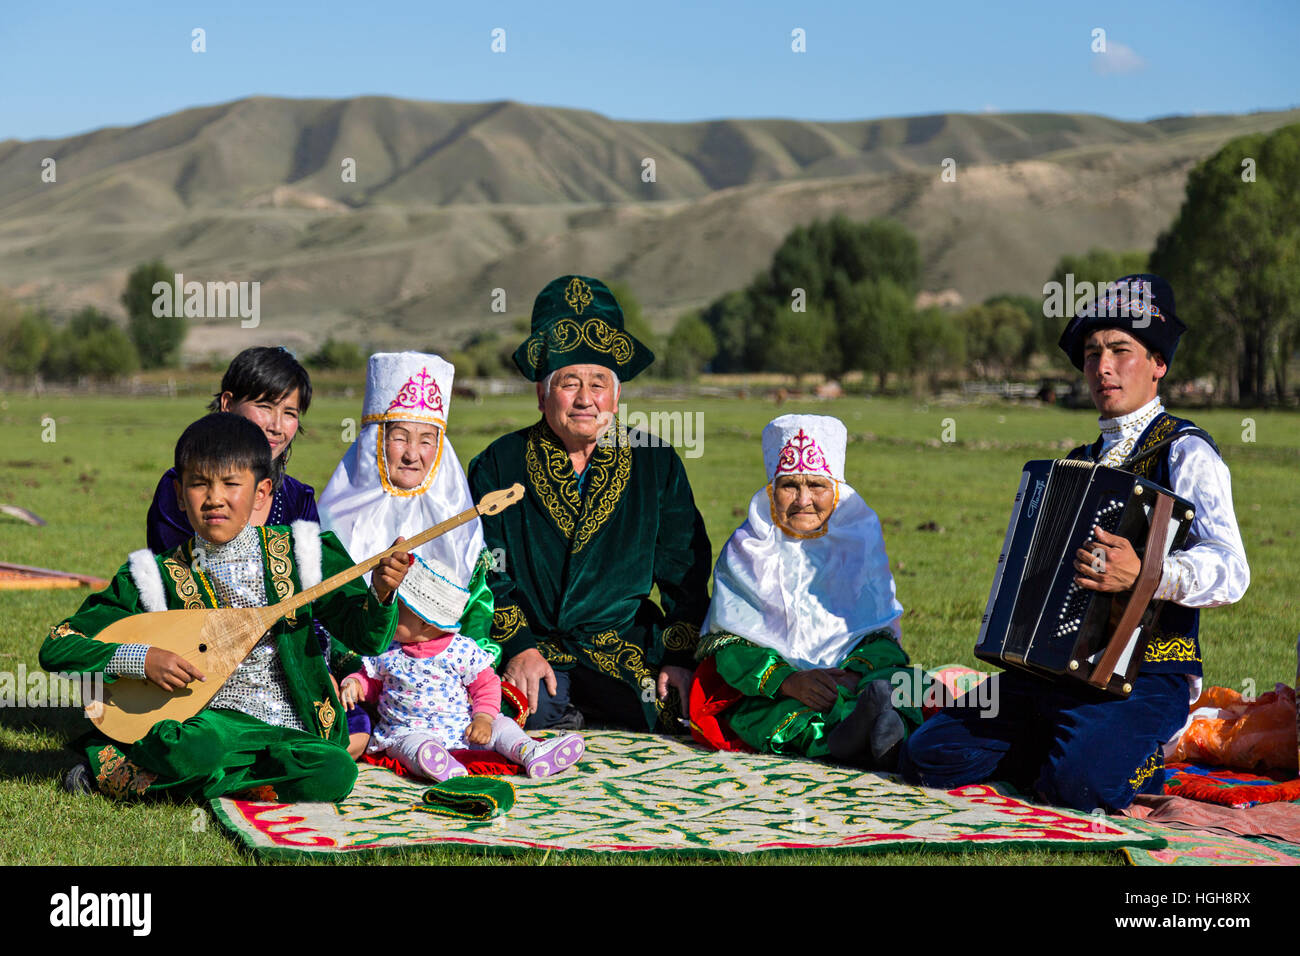 Famille du Kazakhstan, en costume national avec un homme à l'acordeon et un enfant jouant instrument local connu sous le nom de Dombra. Banque D'Images